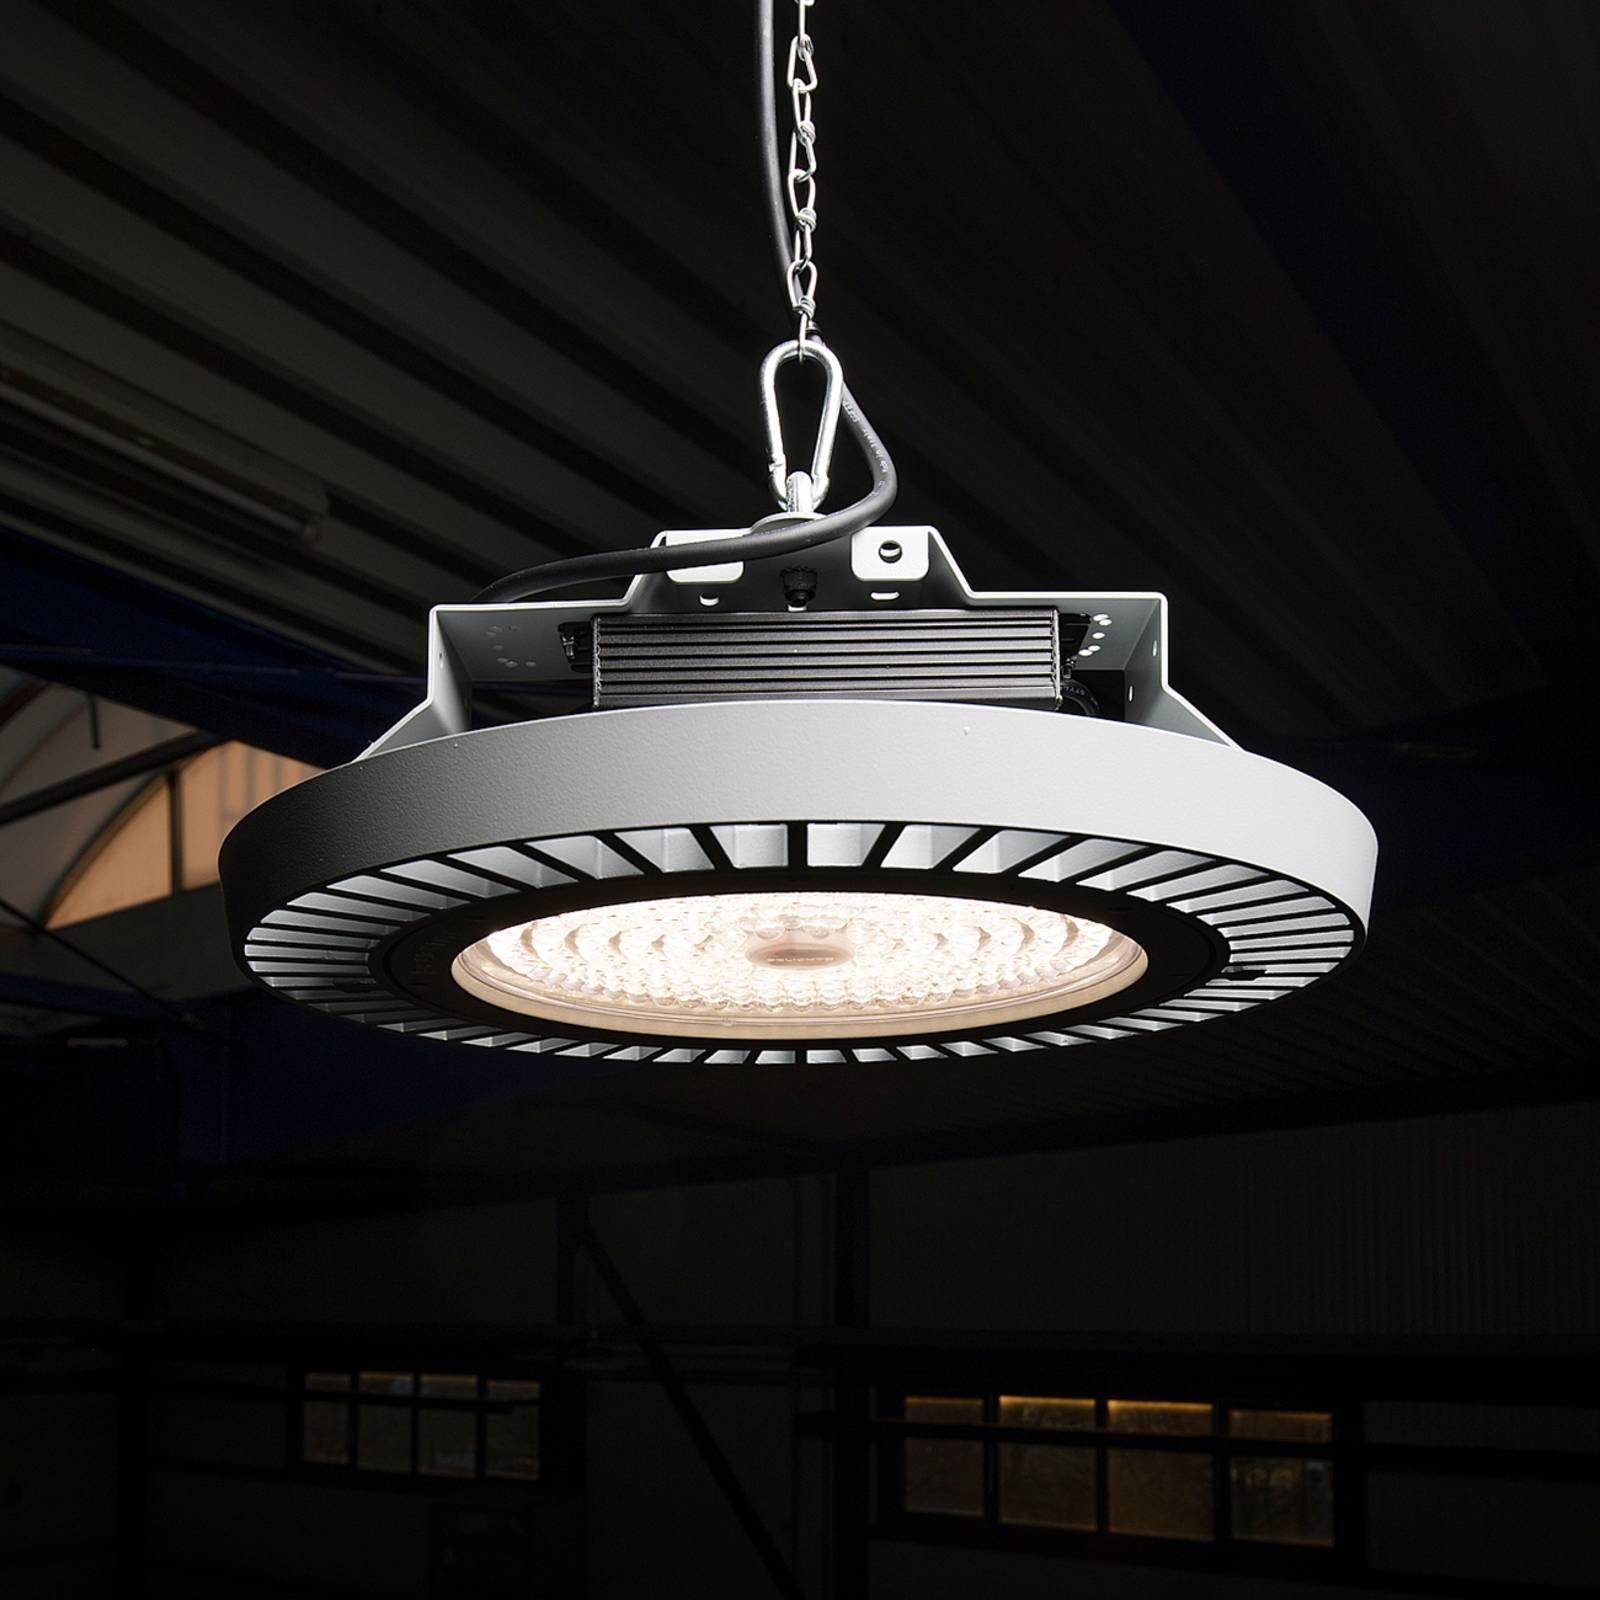 LTS Halová LED lampa FLC 840 kyvadlo šošovka 66° 106W, hliník, polykarbonát, 106W, K: 18.6cm